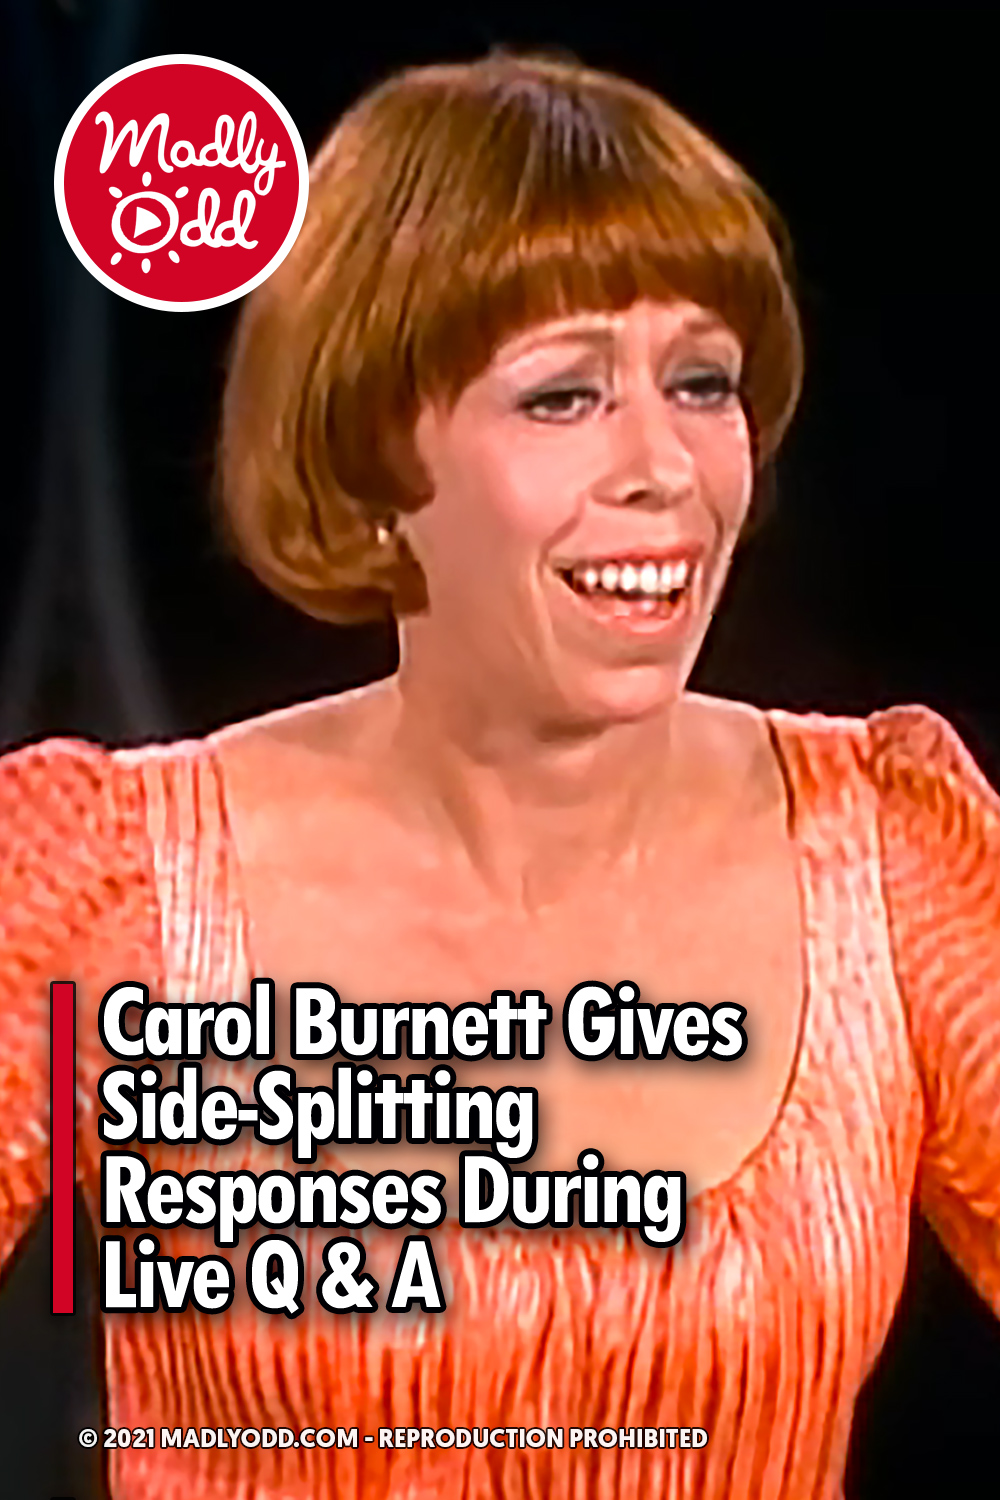 Carol Burnett Gives Side-Splitting Responses During Live Q & A